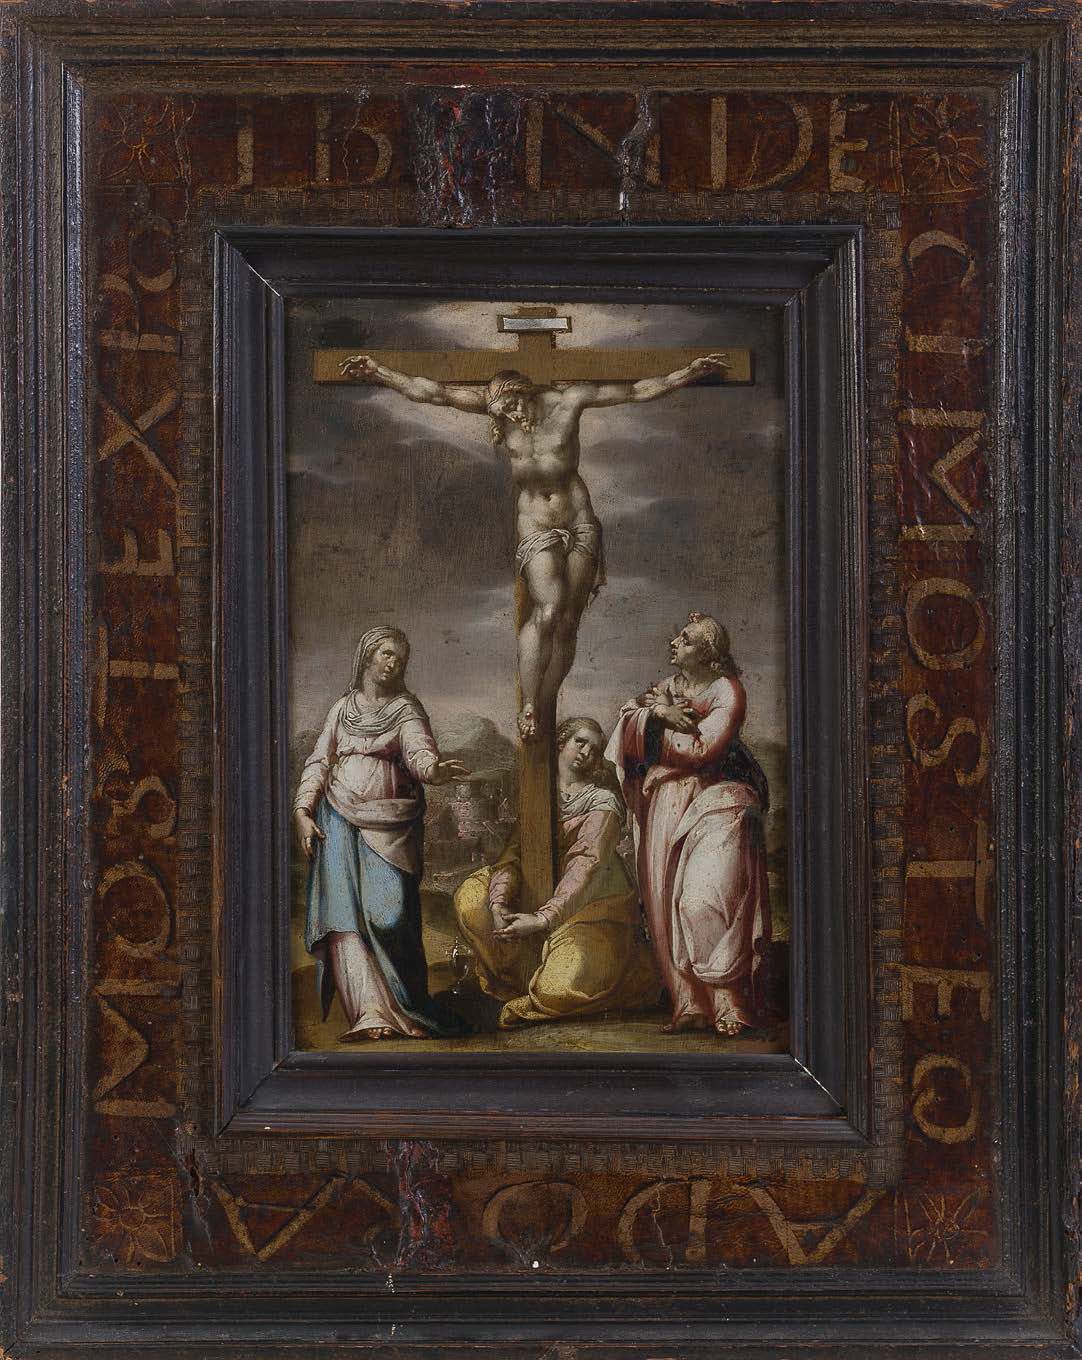 Francesco CAVAZZONI (Bologne 1559 - 1616) La Crocifissione
Rame
24 x 16,5 cm
In &hellip;